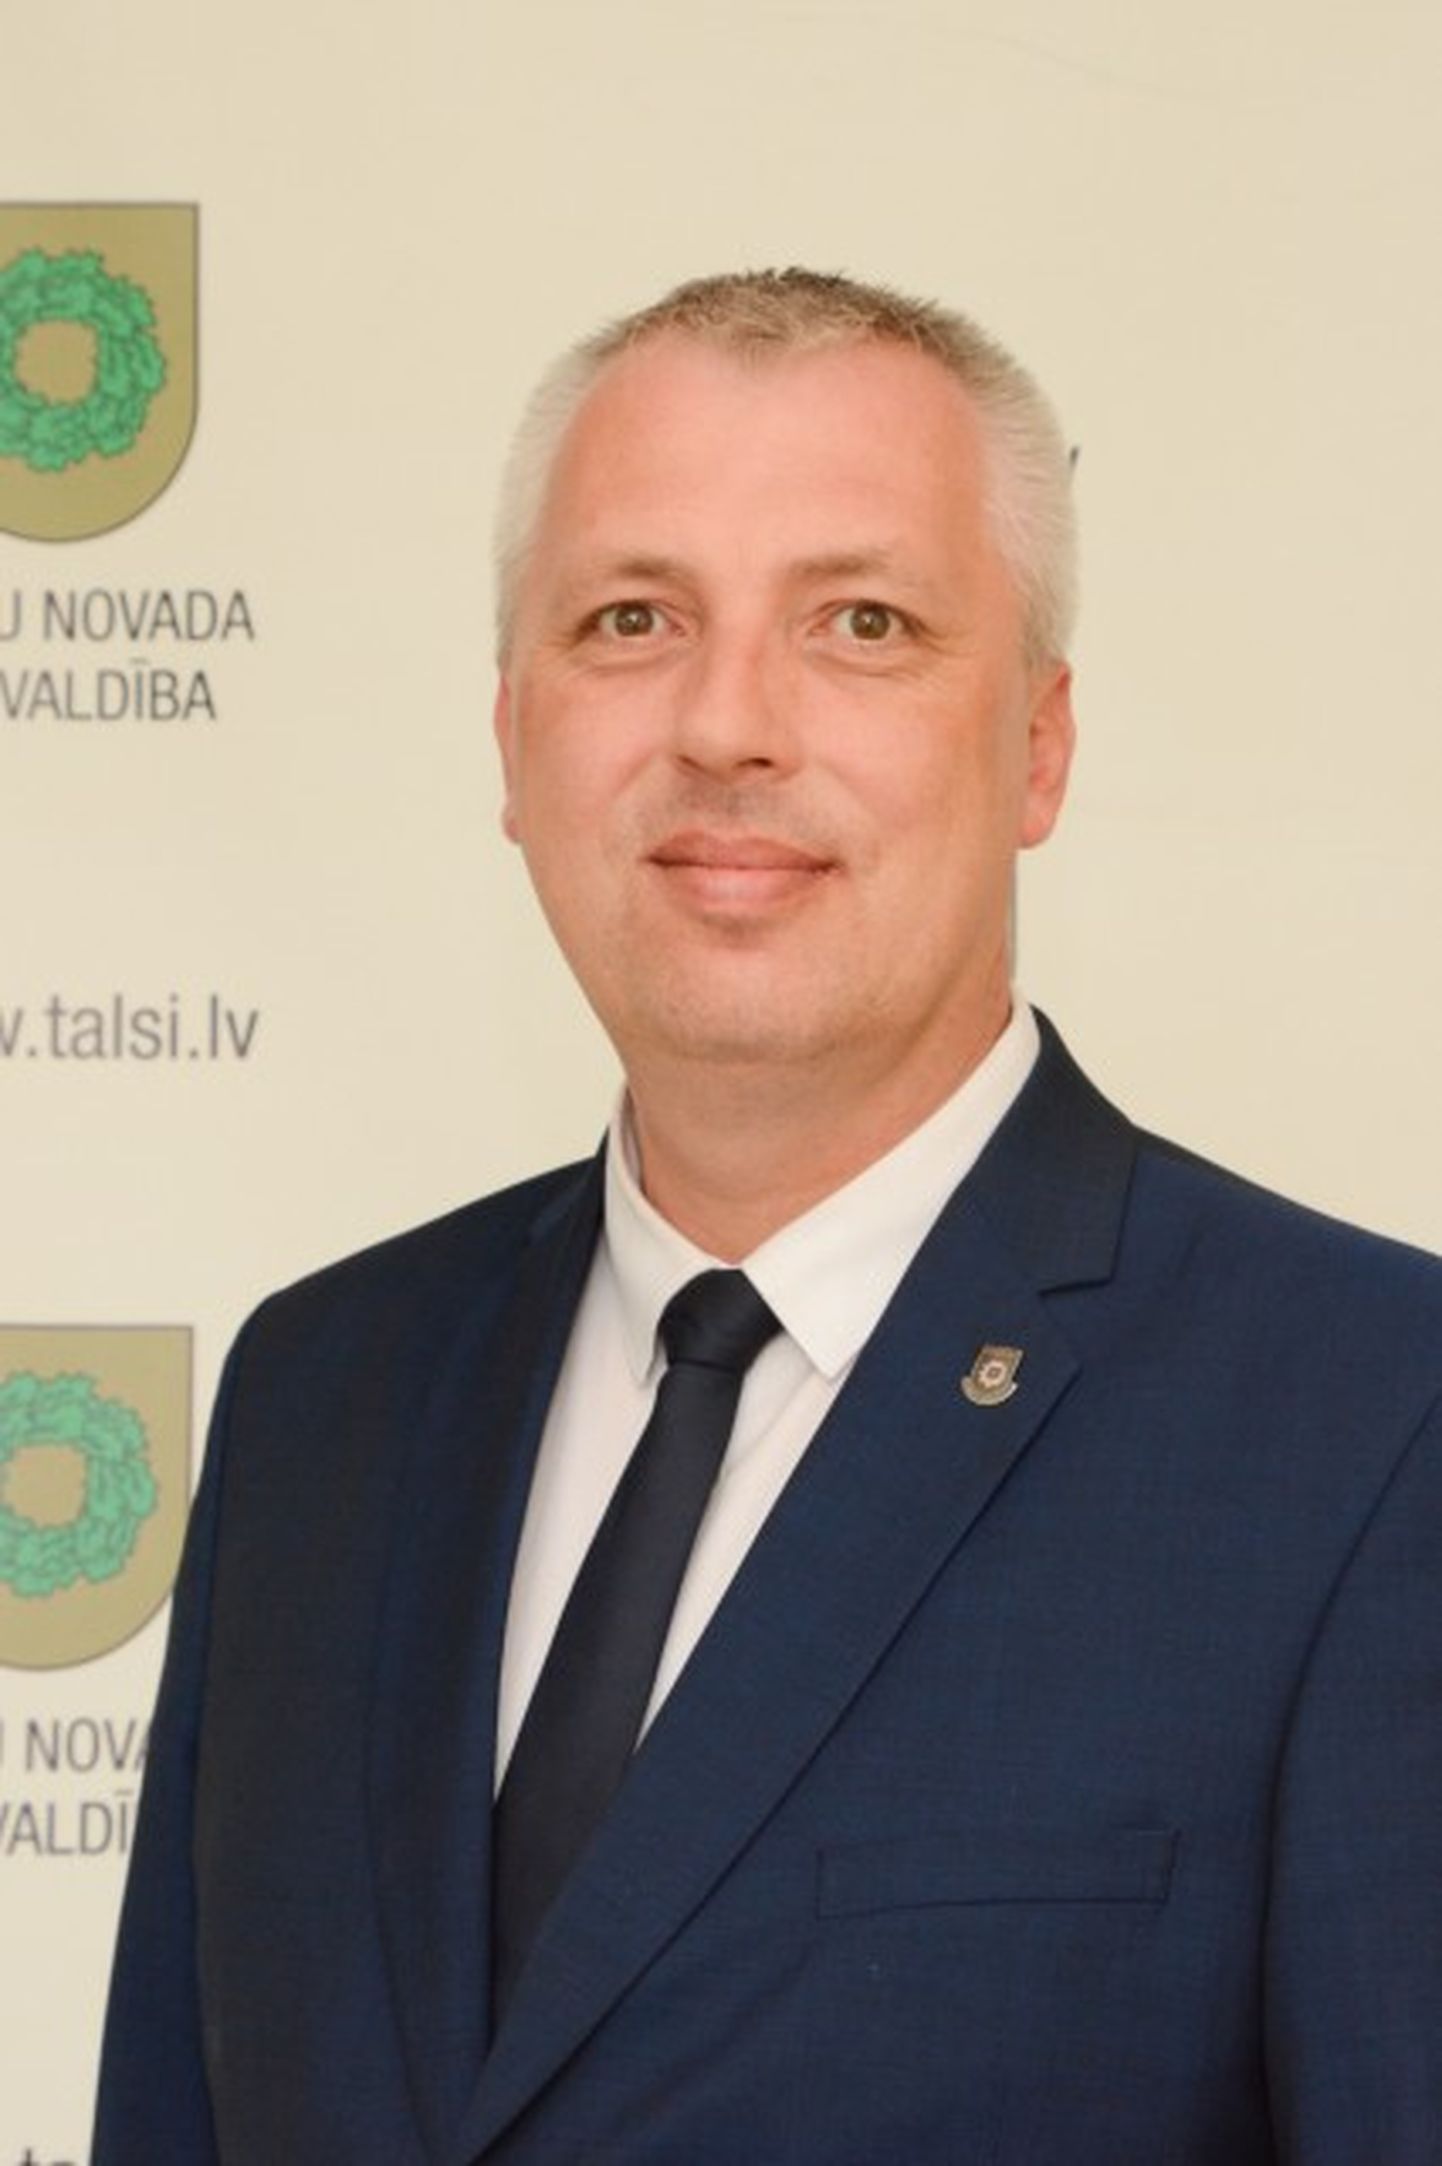 Член правления Крестьянского союза Латвии (LZS) Дайнис Каролс, трижды получавший штрафы от KNAB